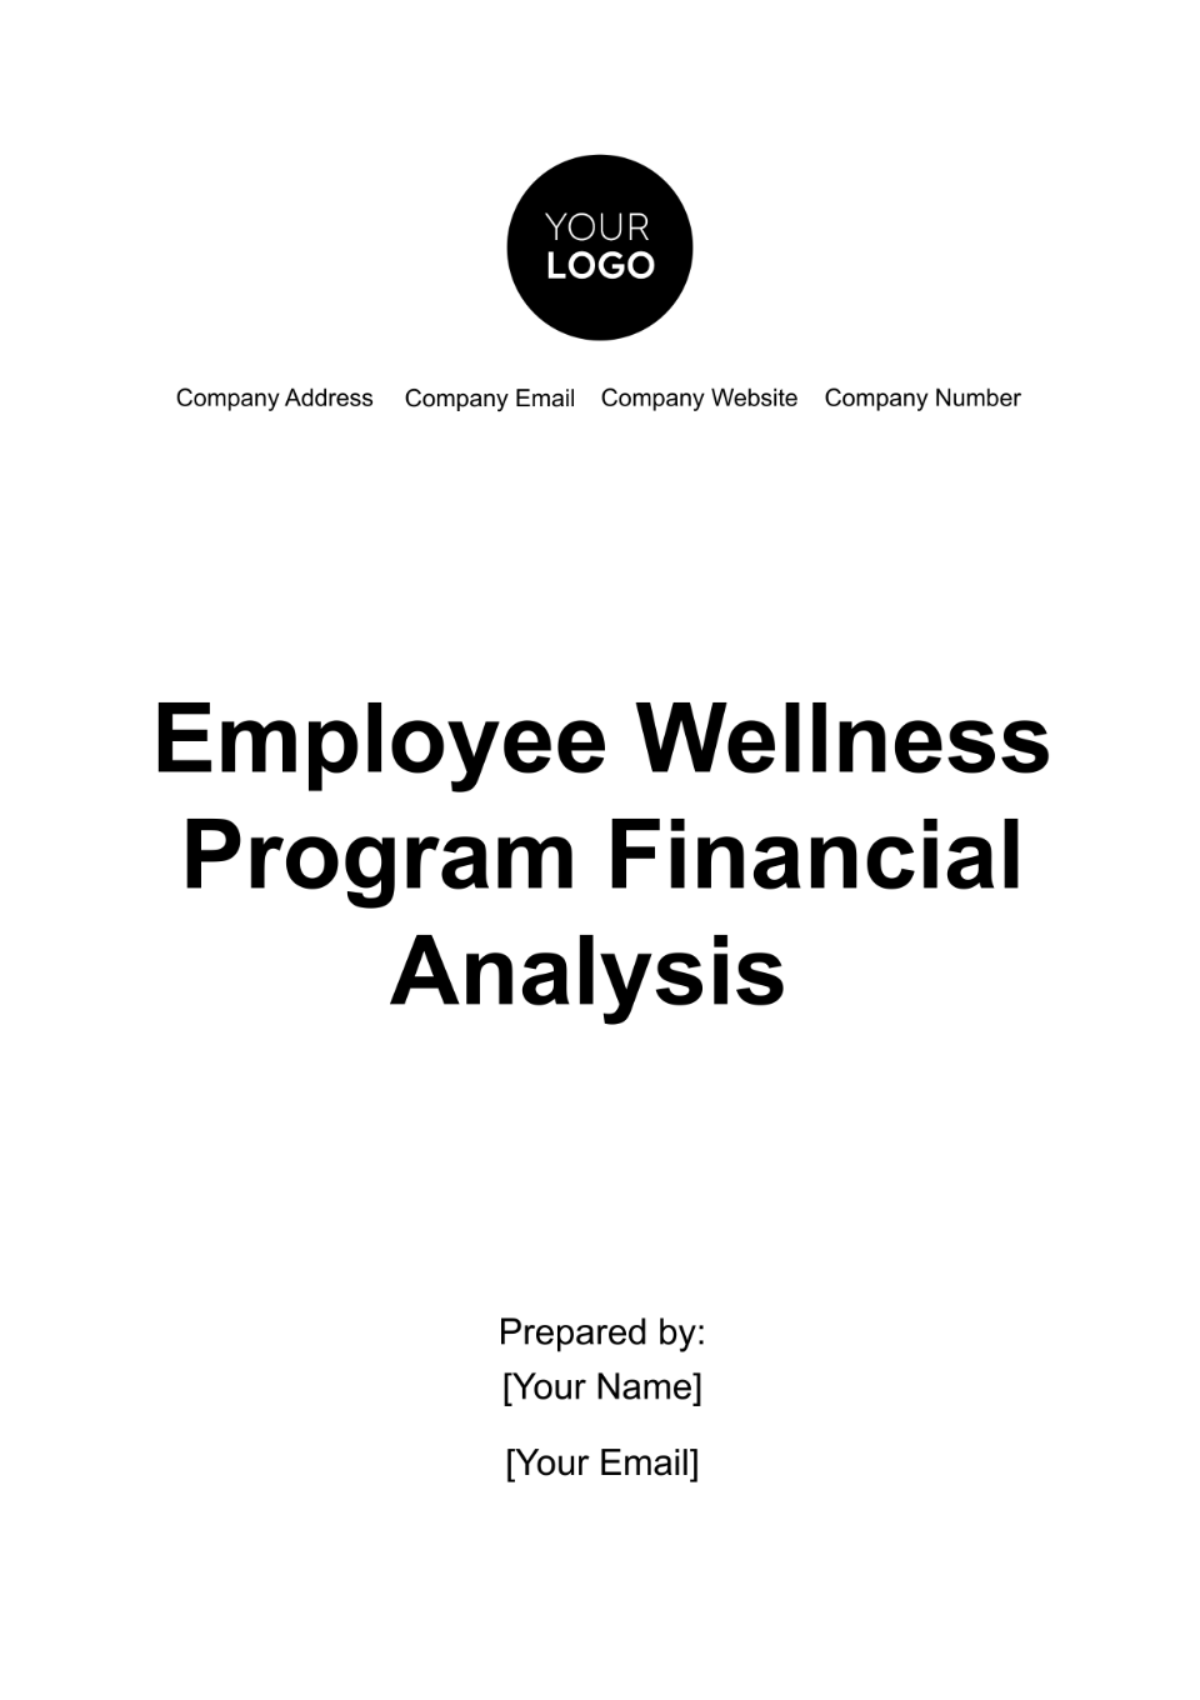 Employee Wellness Program Financial Analysis Template